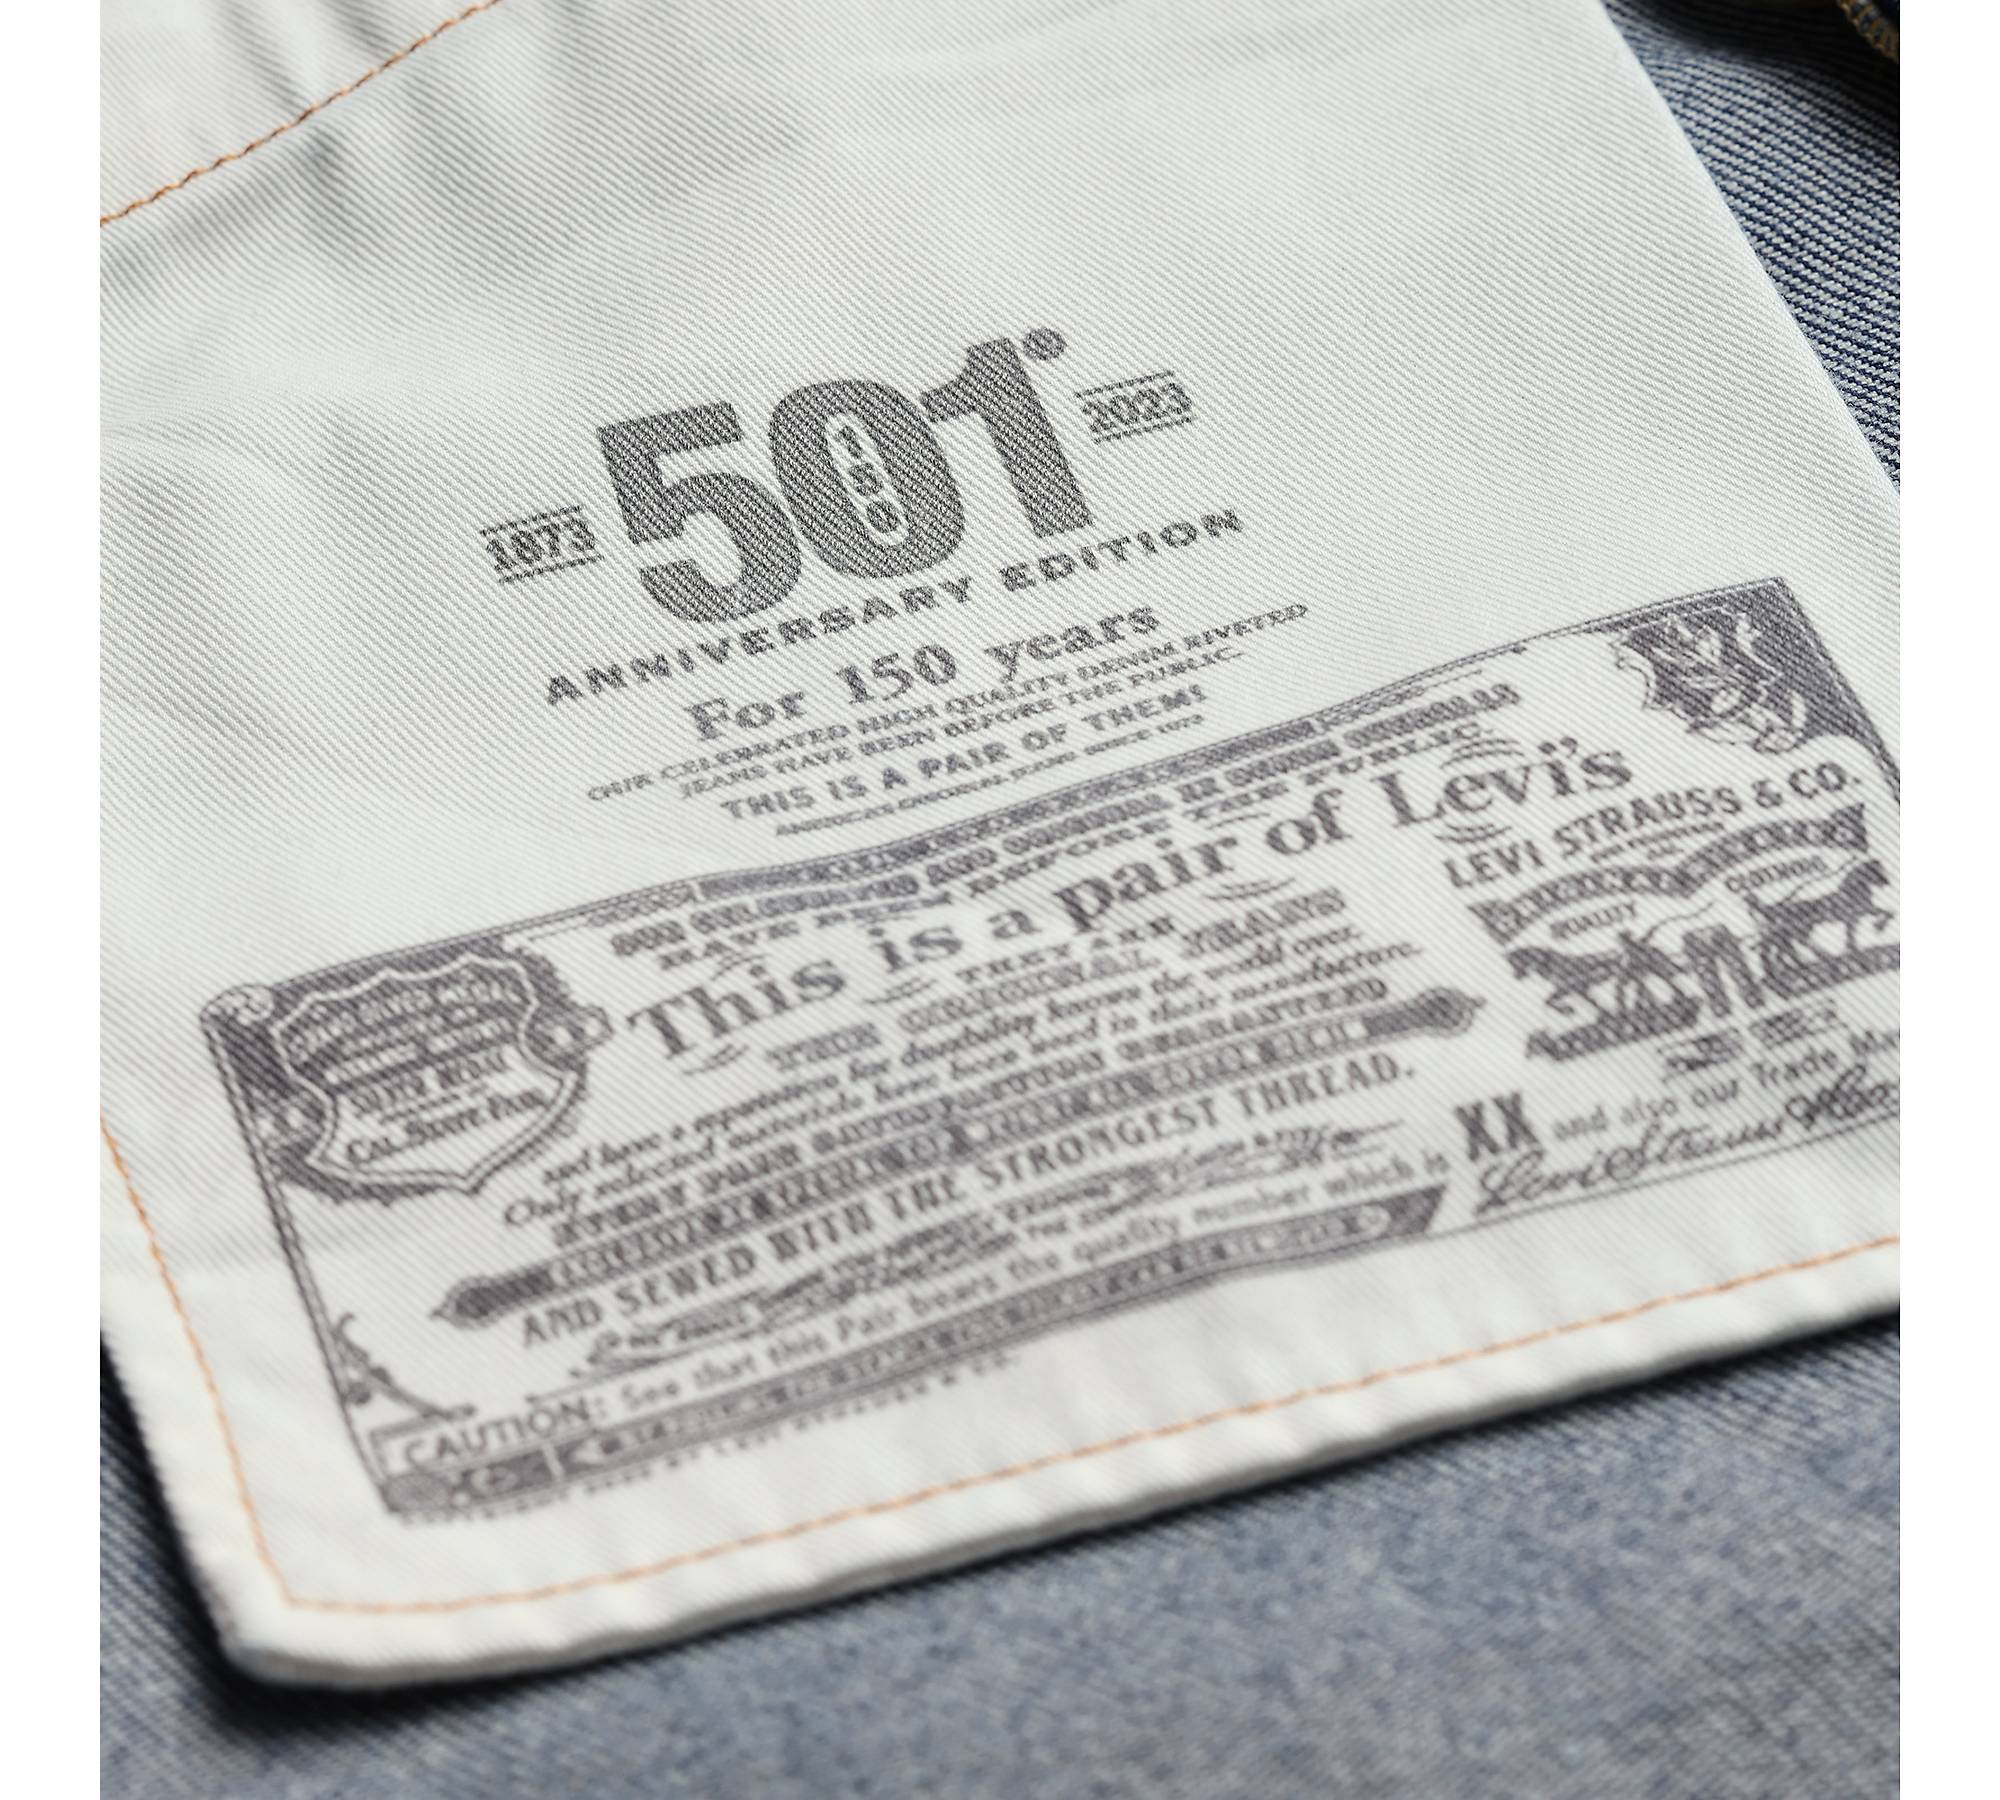 501® Original Fit Shrink-to-fit™ Selvedge Men's Jeans - Dark Wash